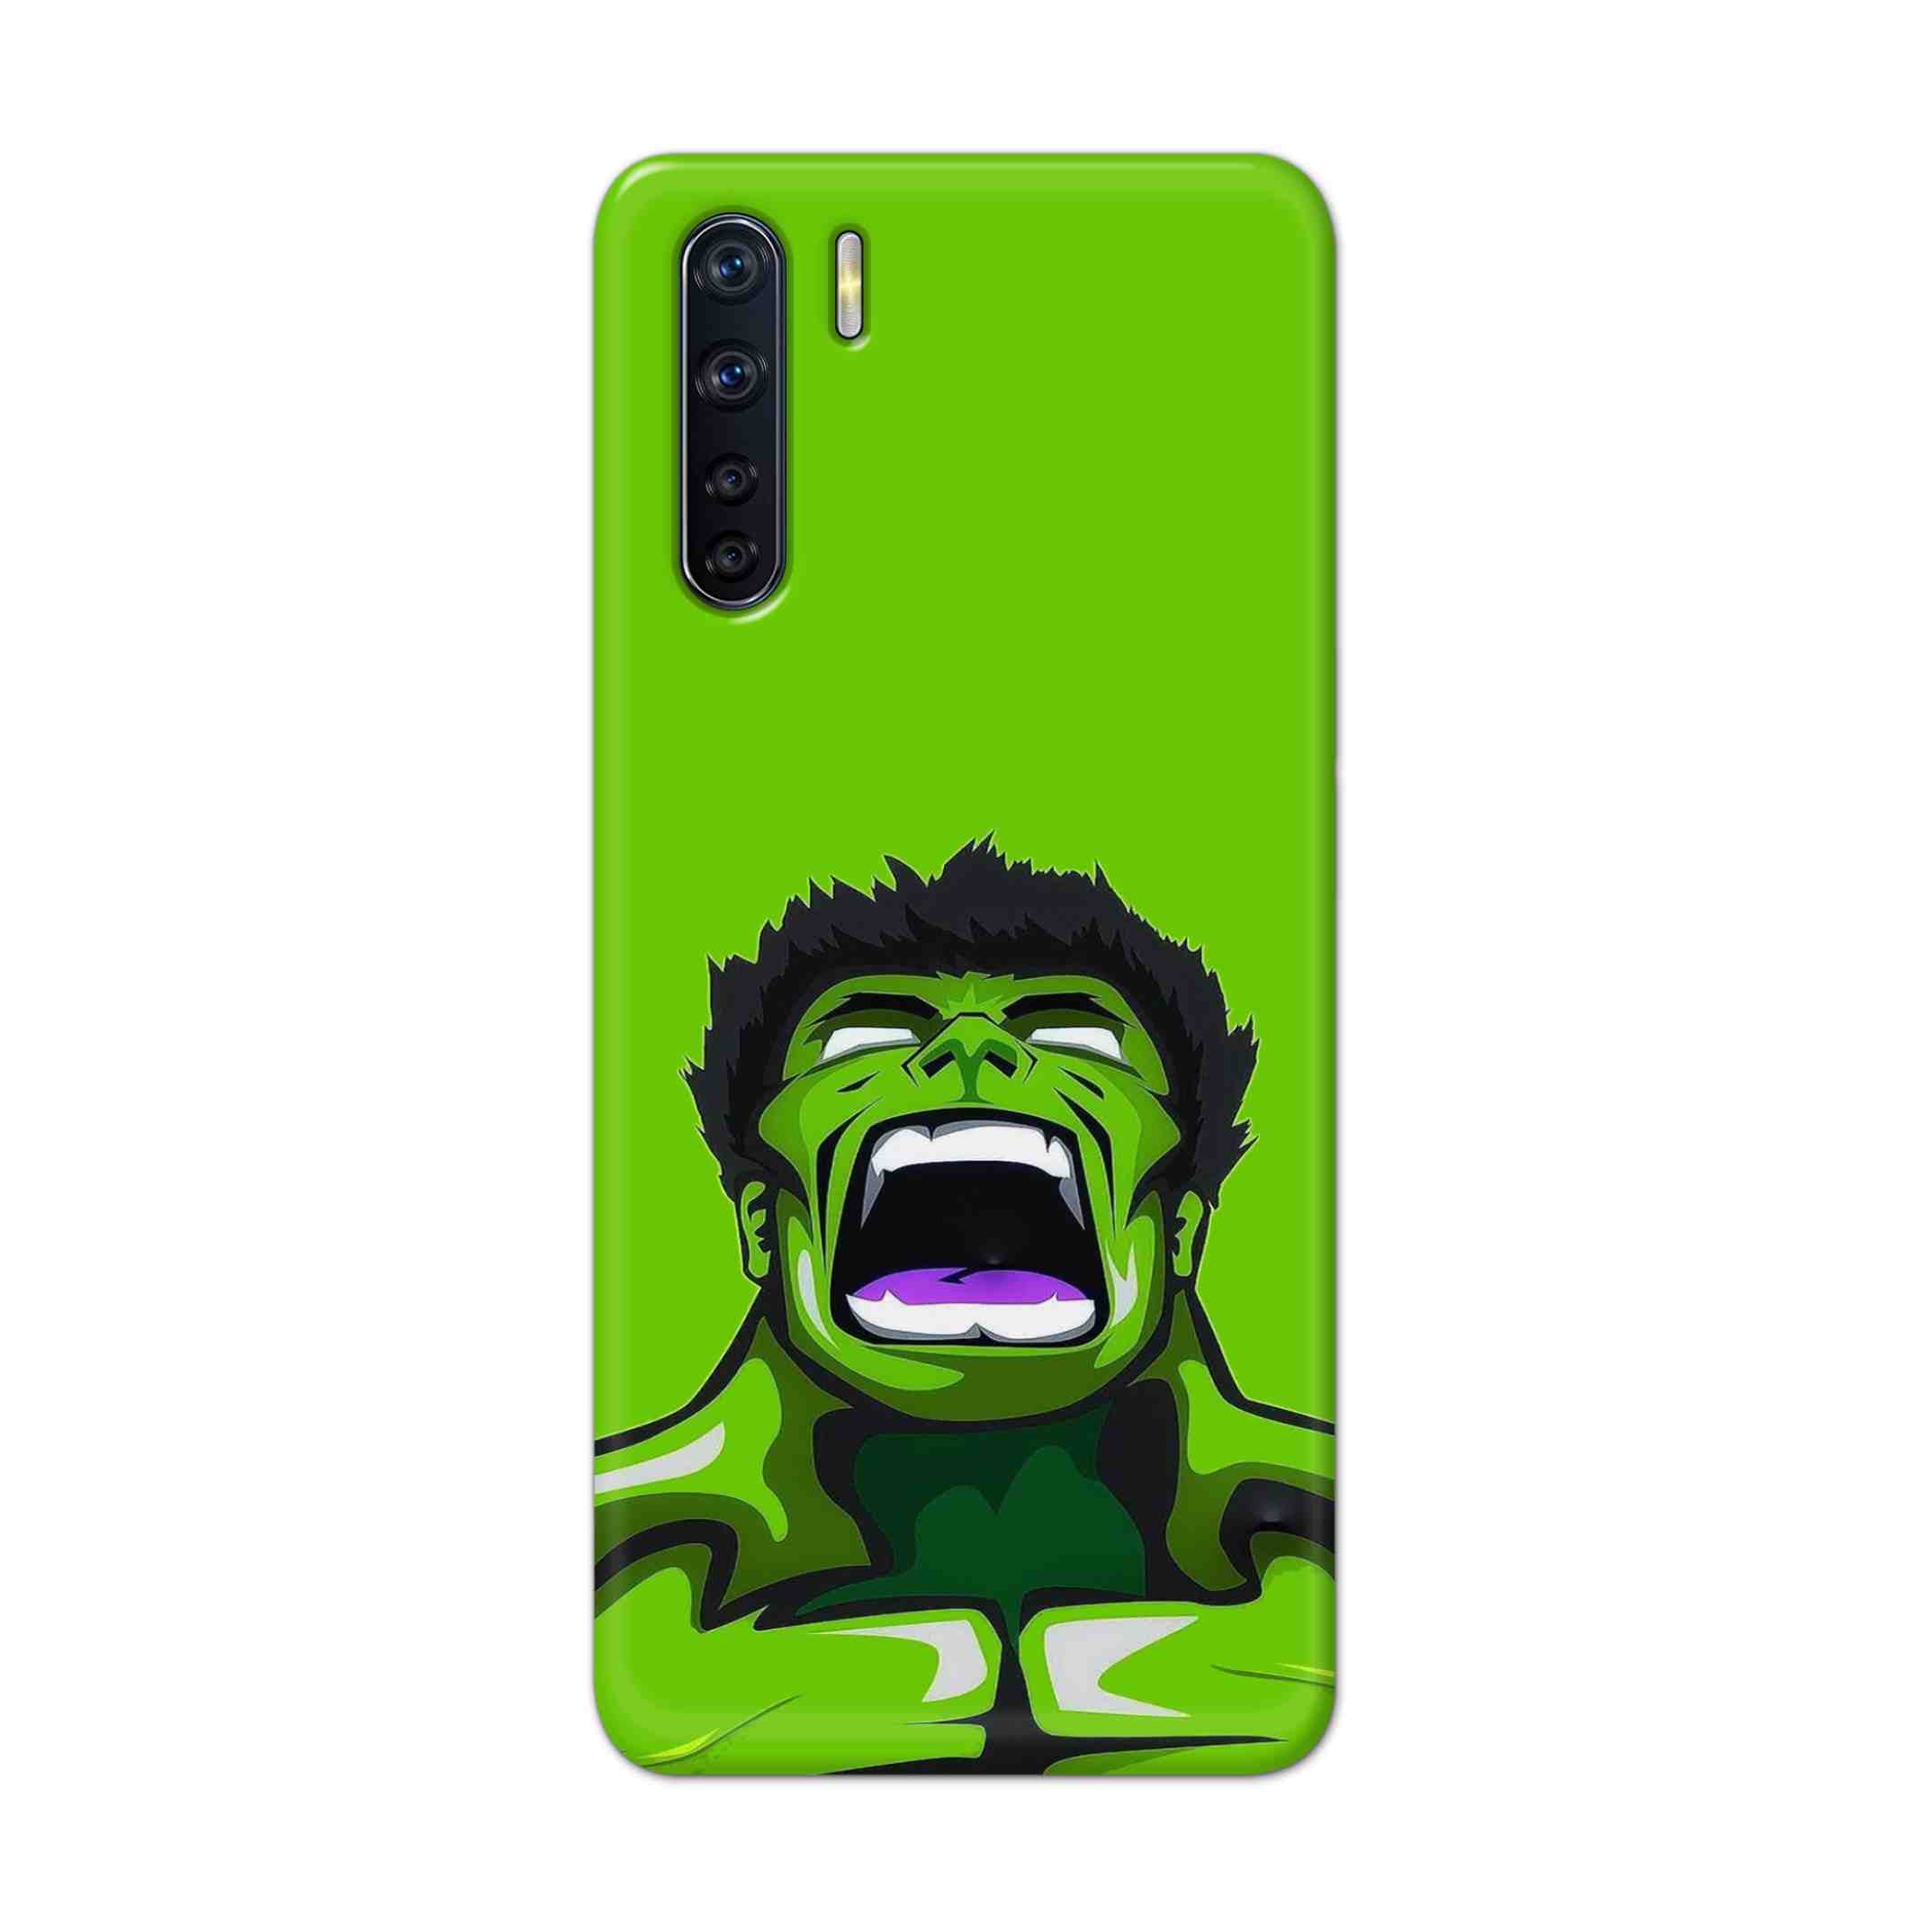 Buy Green Hulk Hard Back Mobile Phone Case Cover For OPPO F15 Online